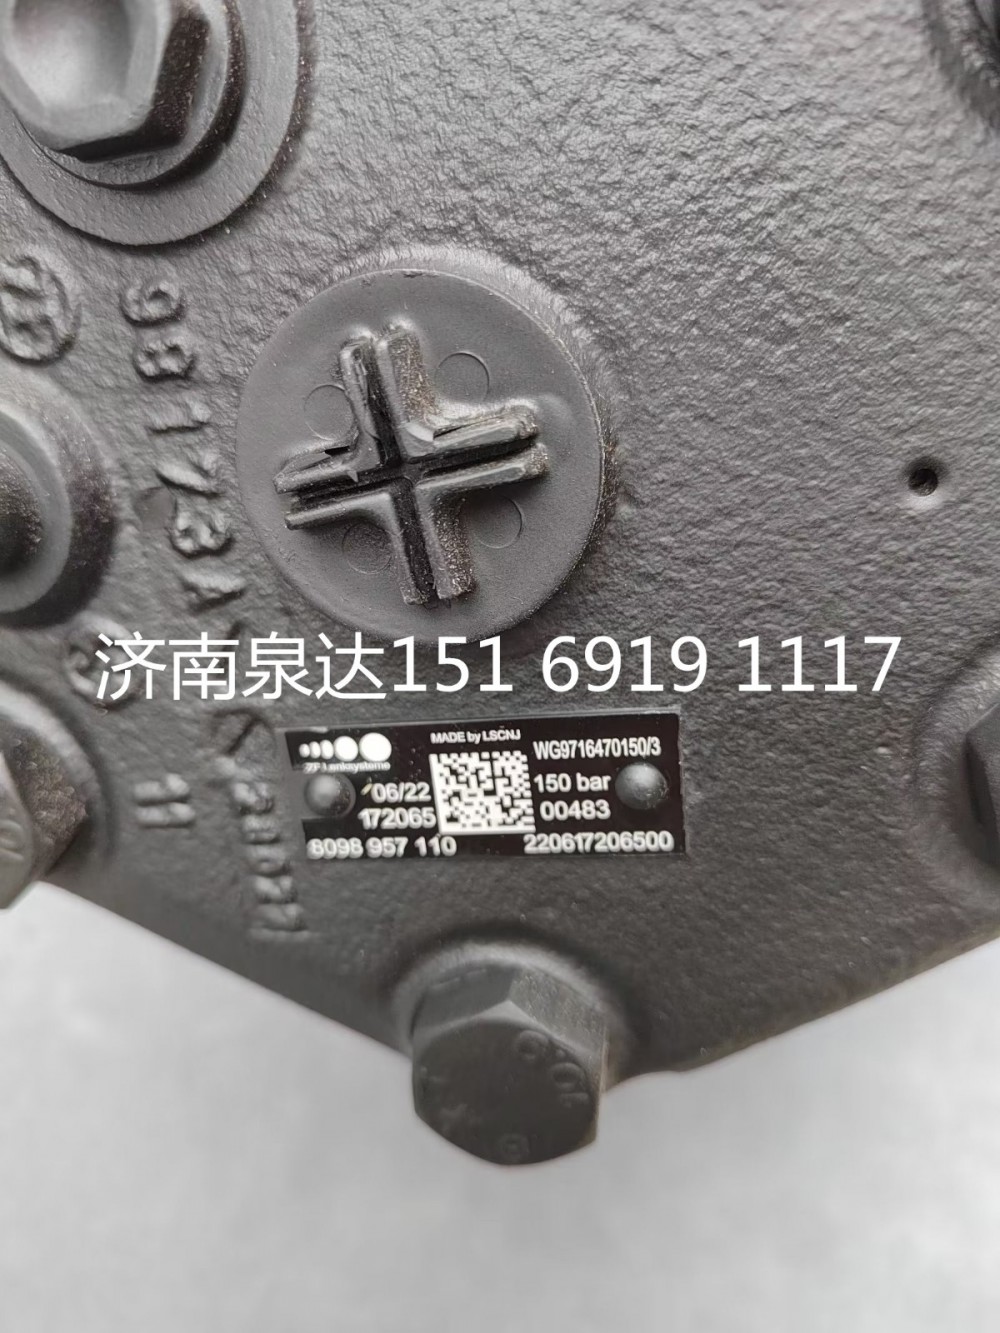 WG9716470150,方向机总成,济南泉达汽配有限公司